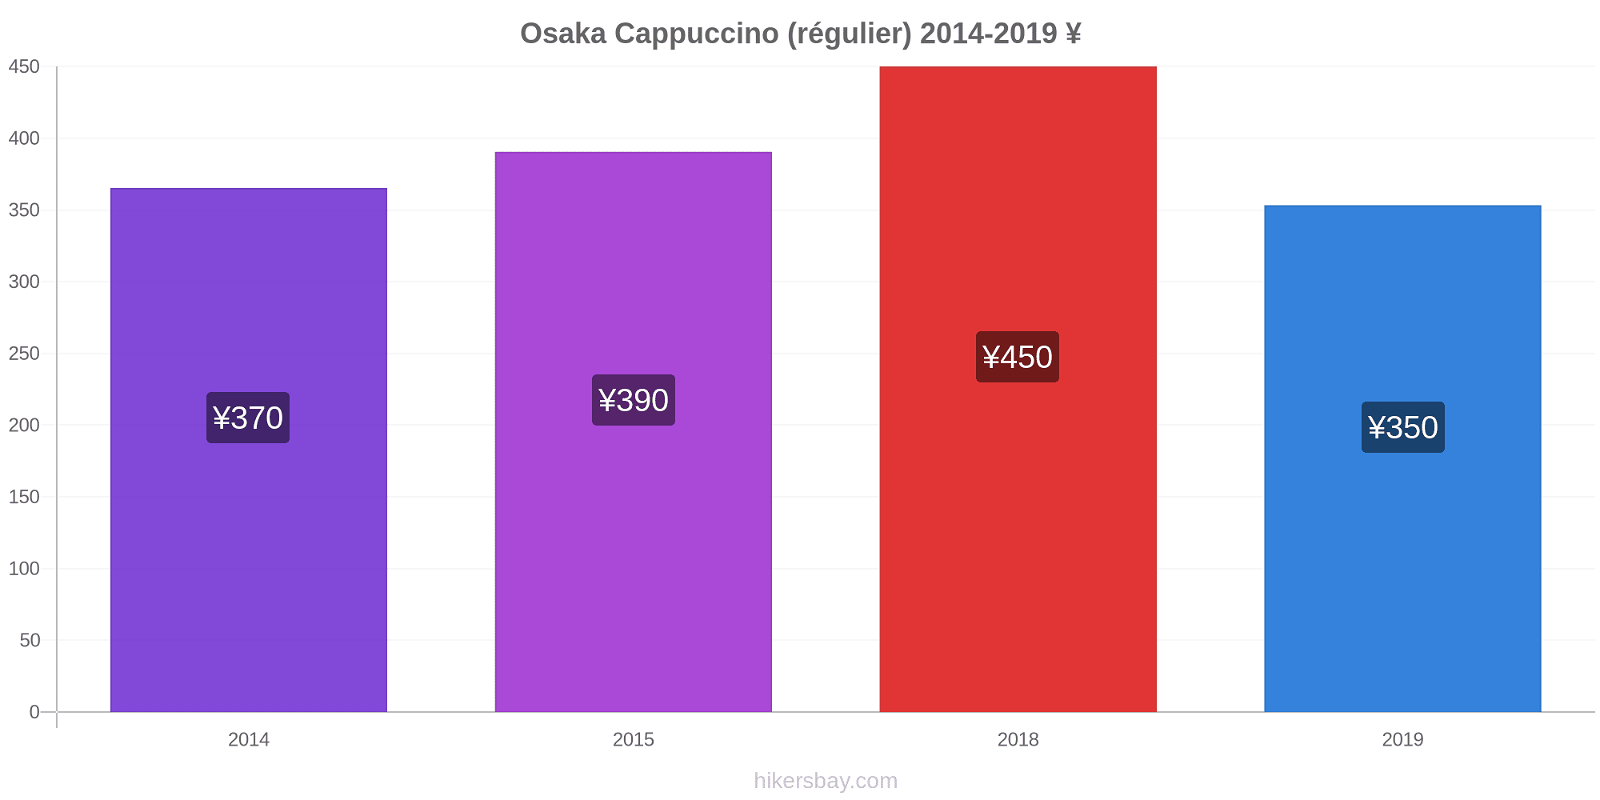 Osaka changements de prix Cappuccino (régulier) hikersbay.com